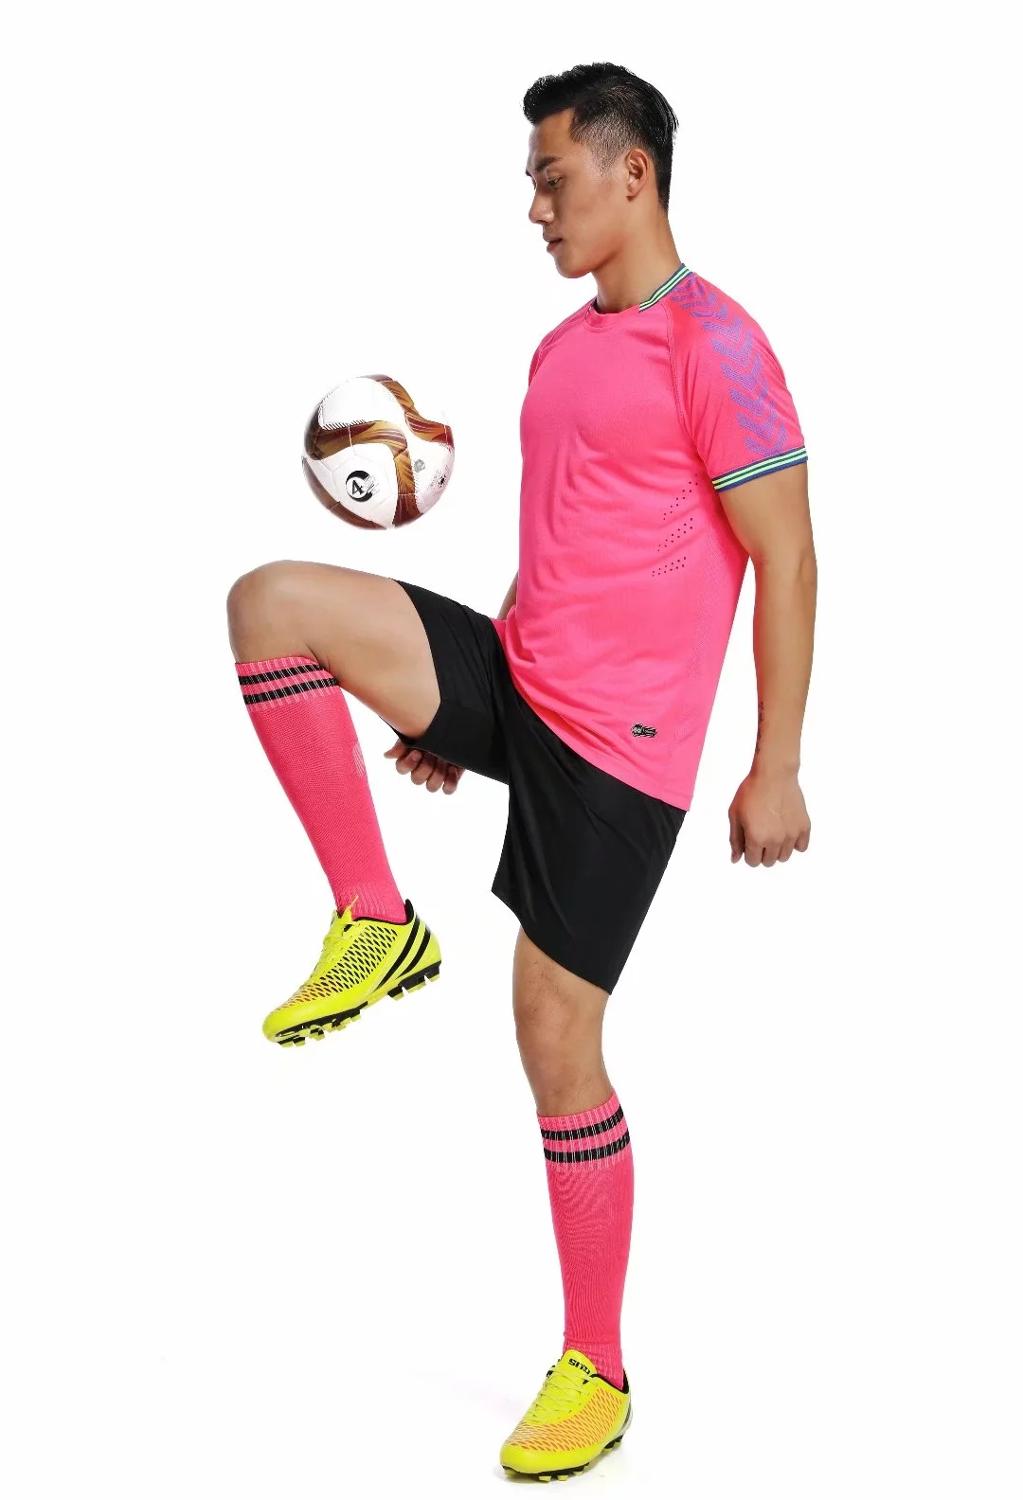 2019 2020 New Custom Blank Football Jerseys Men Maillot De Soccer Sets Football Kits for Adult Kid Sport Wear Football Tracksuit